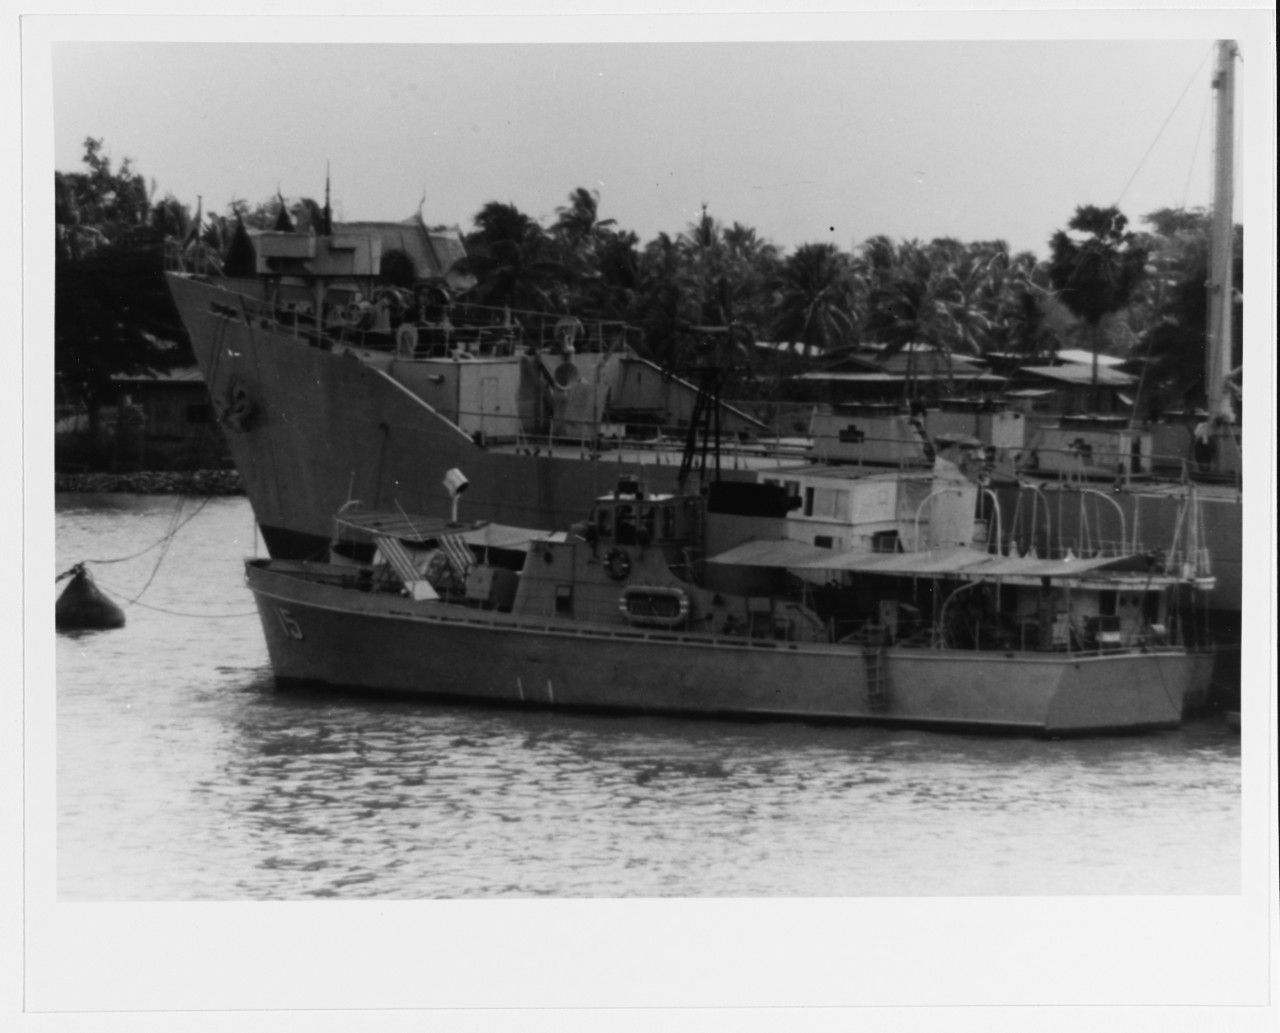 CGC-15 (Thai patrol craft, 1954)